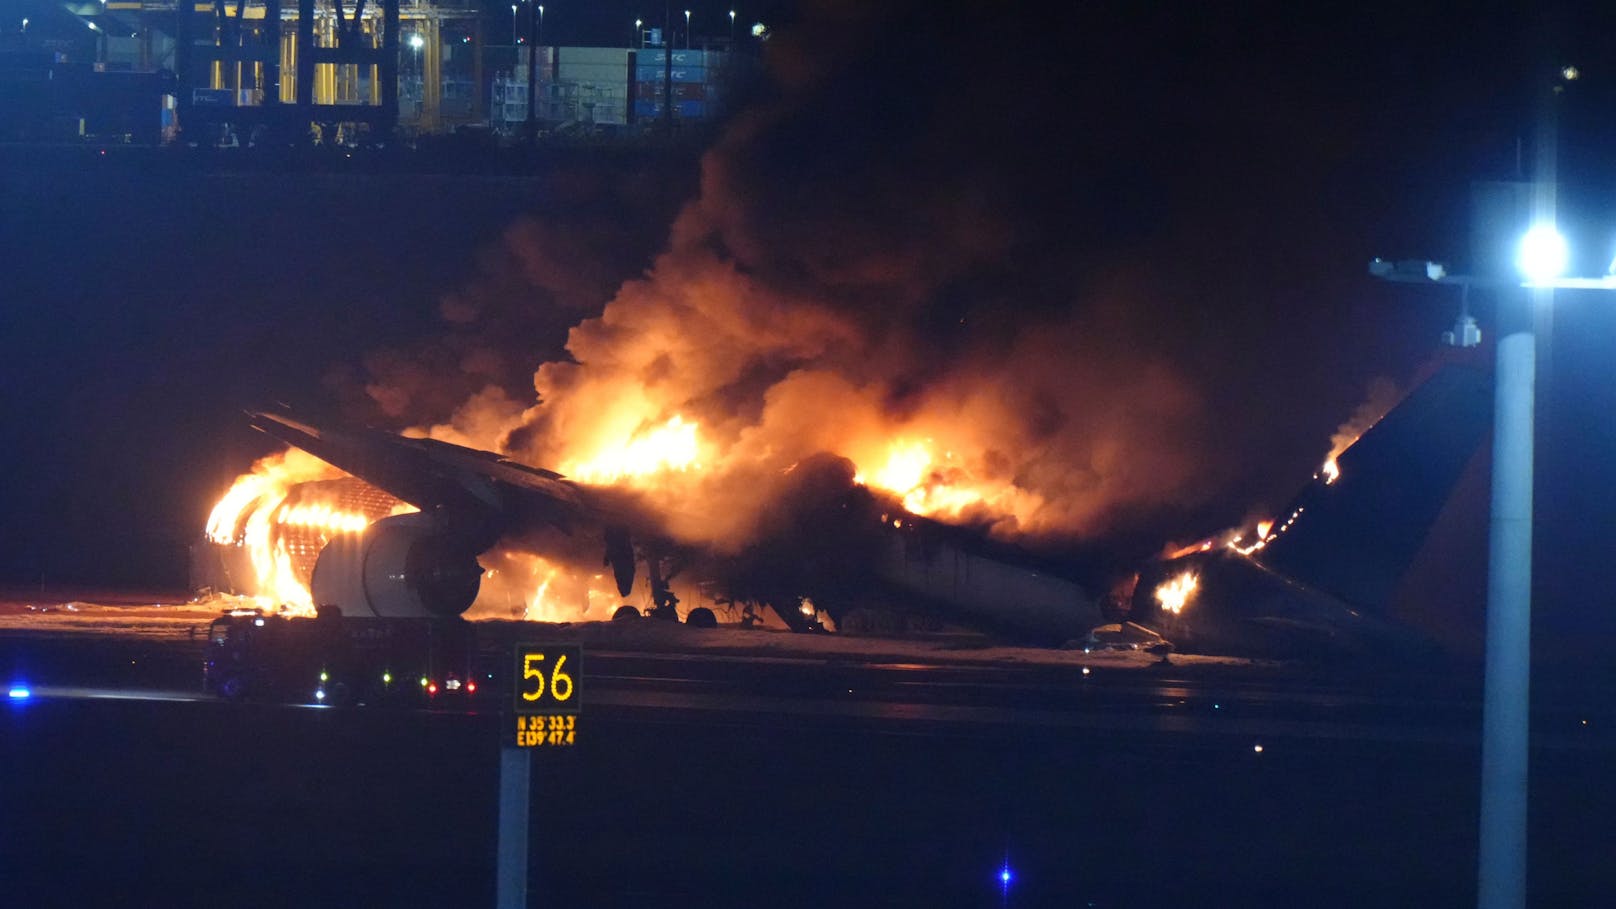 Beim Landeanflug war das Flugzeug aus noch unbekannter Ursache in Brand geraten.